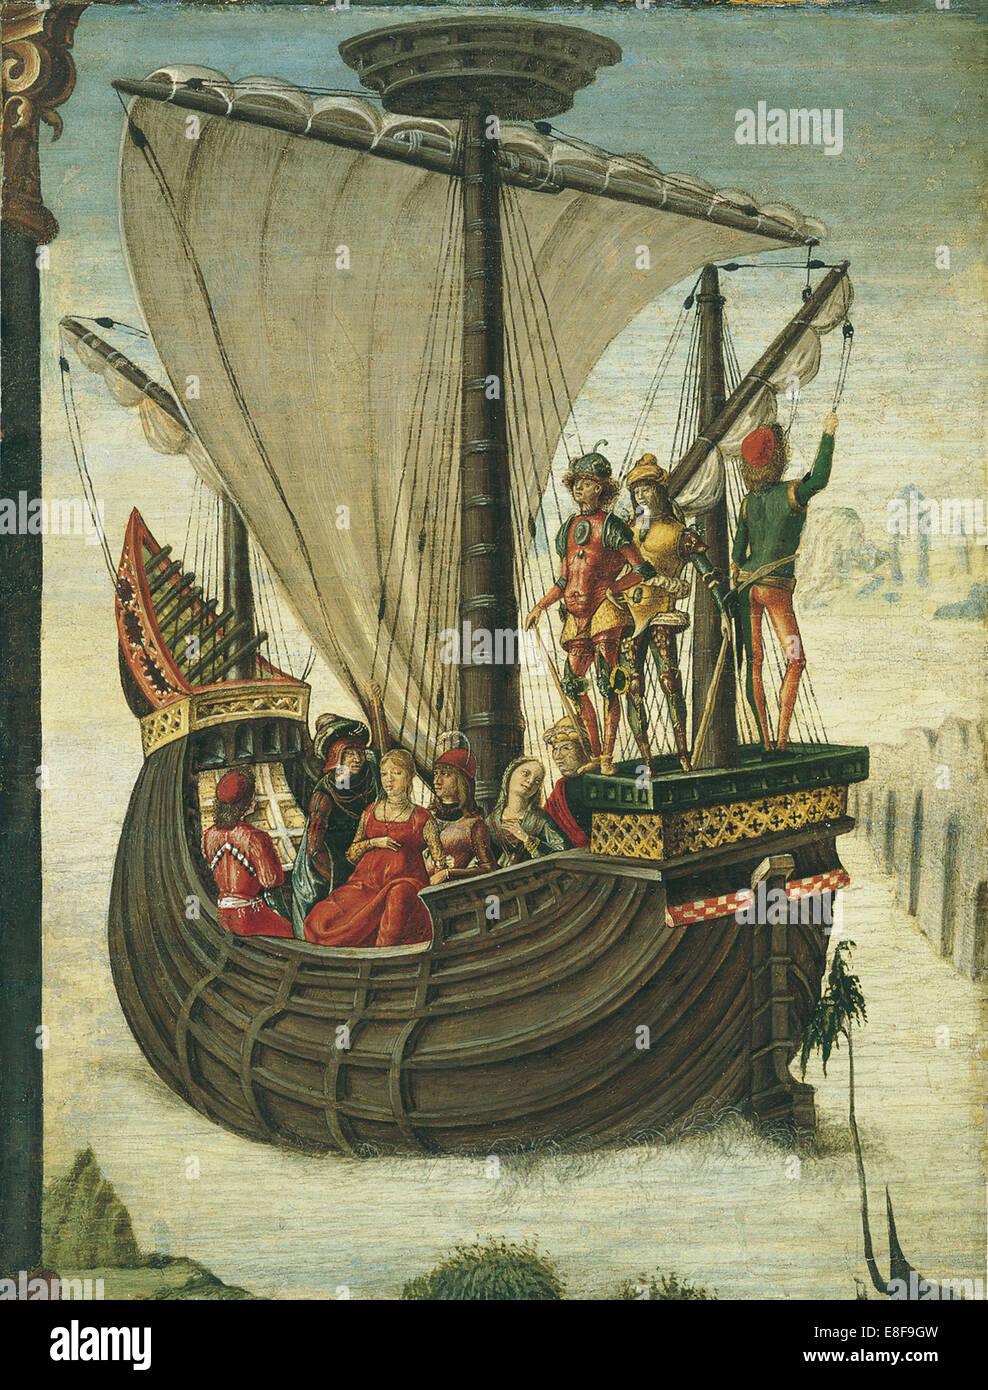 The Argonauts leaving Colchis. Artist: De' Roberti, Ercole (c. 1450-1496) Stock Photo